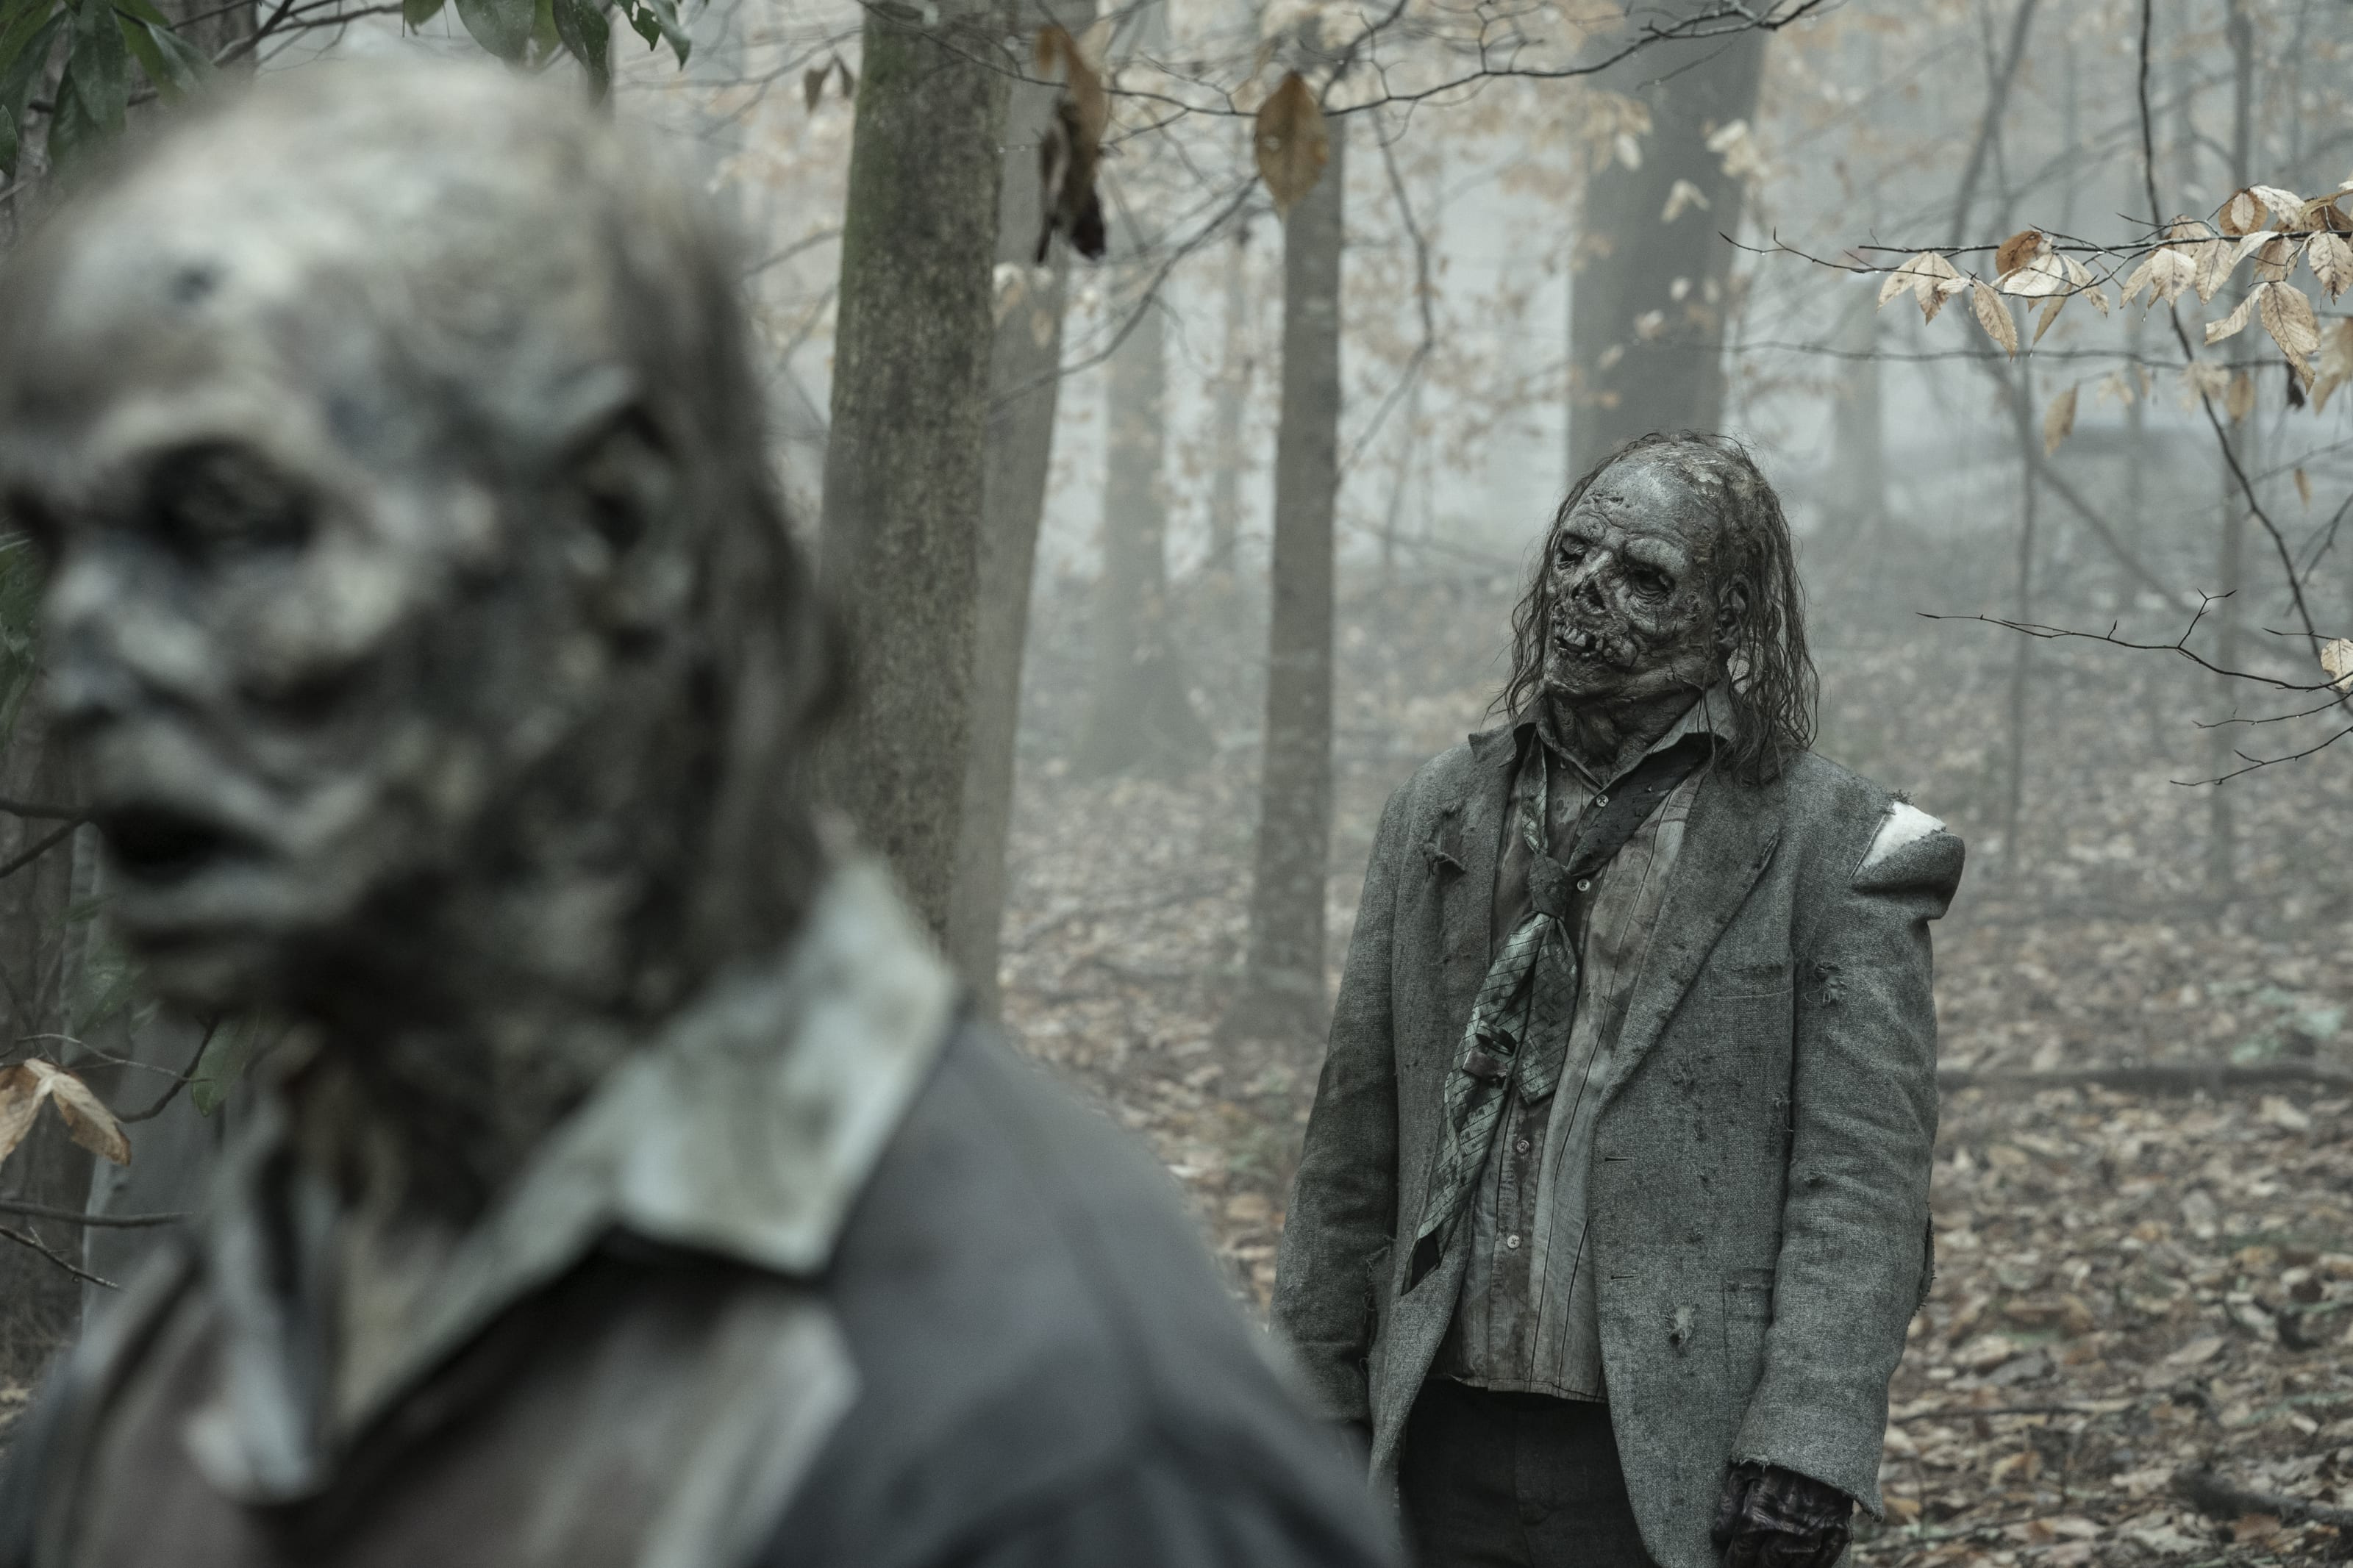 Tales of The Walking Dead season 1, episode 4 recap: Amy/Dr. Everett